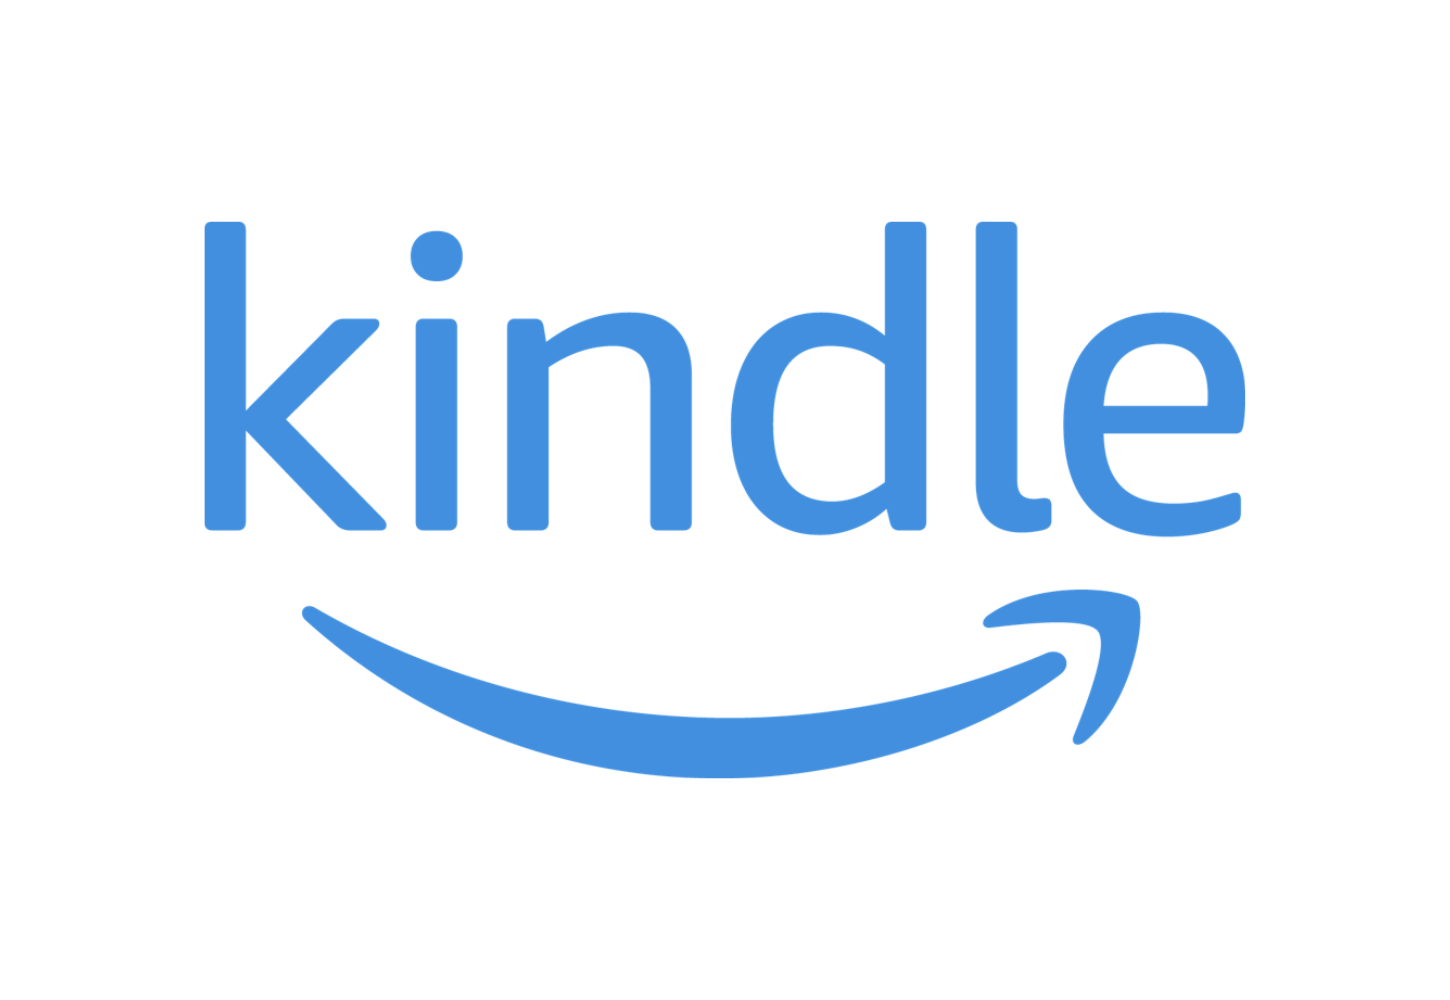 Kindle Reader logo